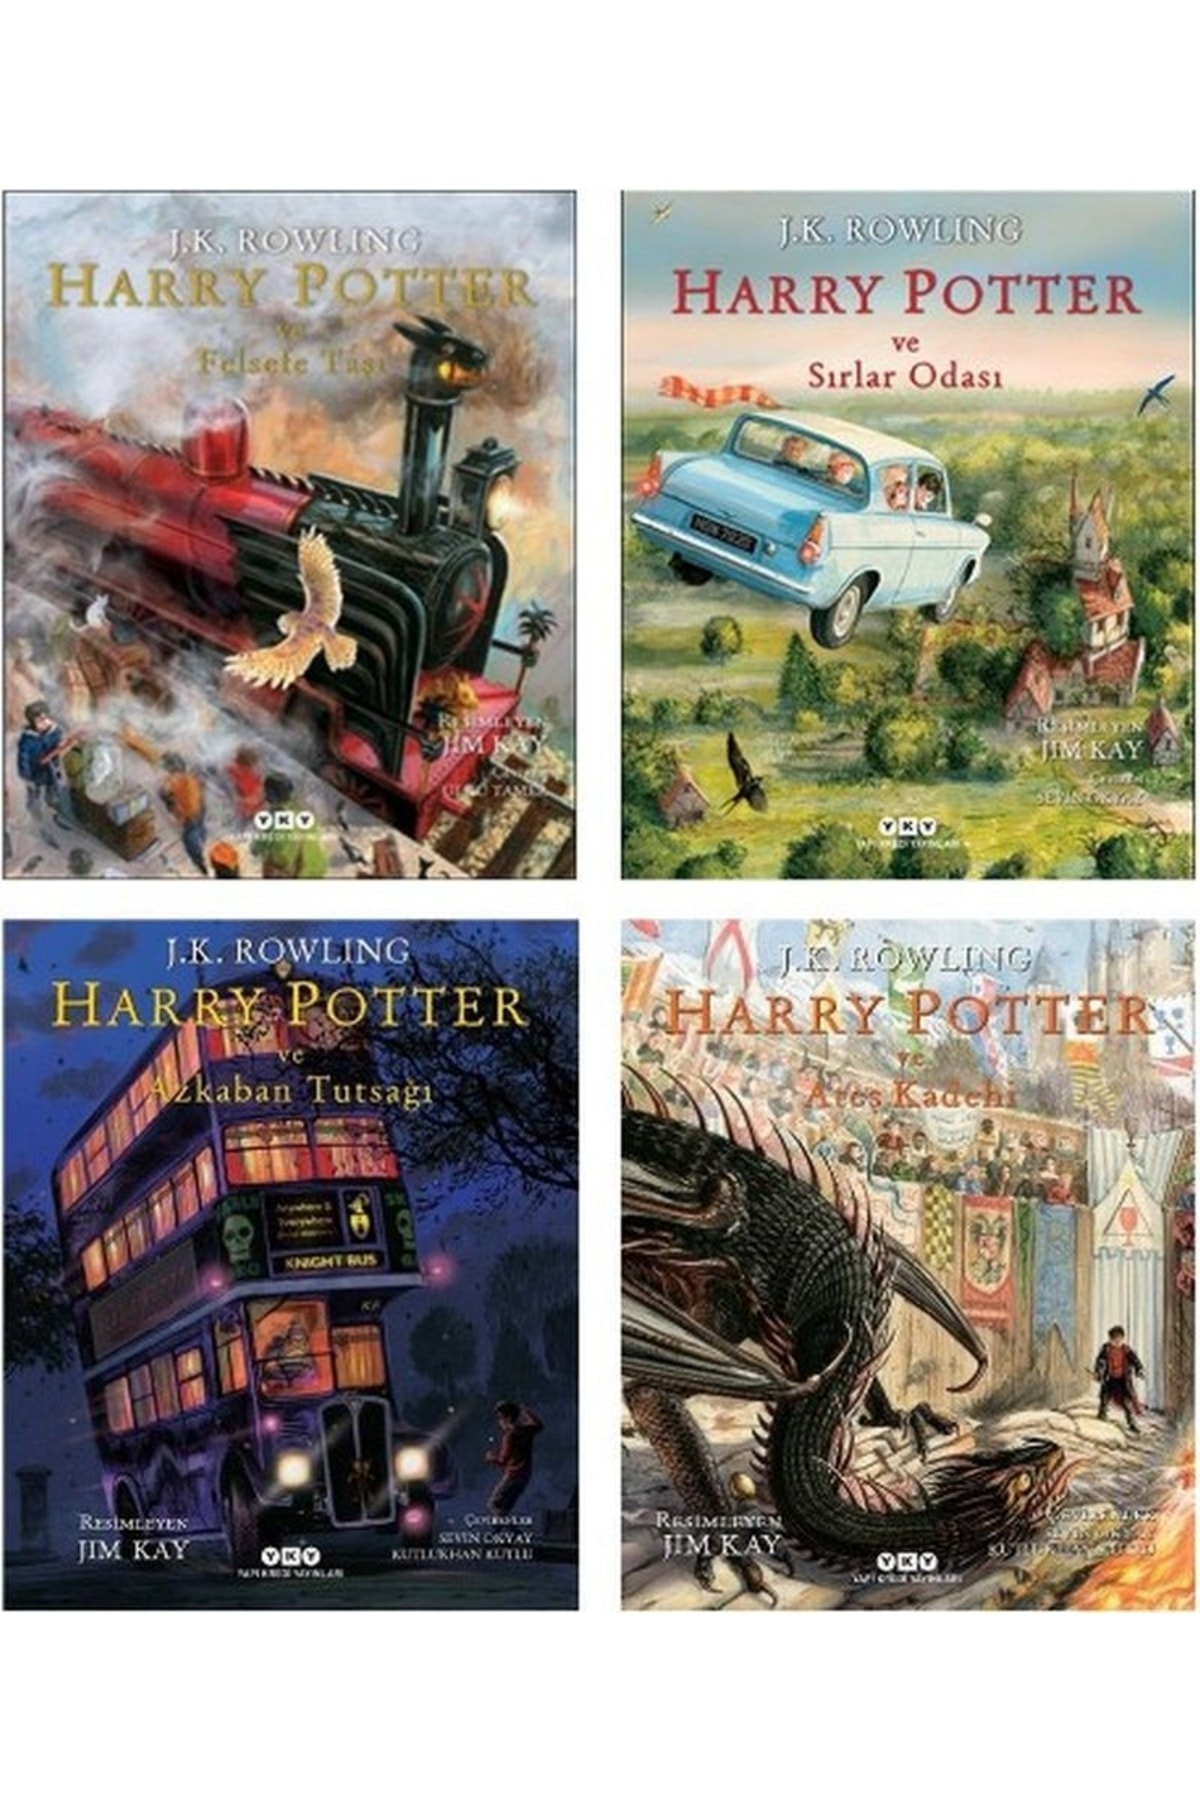 Harry Potter ve Ateş Kadehi Resimli Baskı Tam İnceleme - YouTube